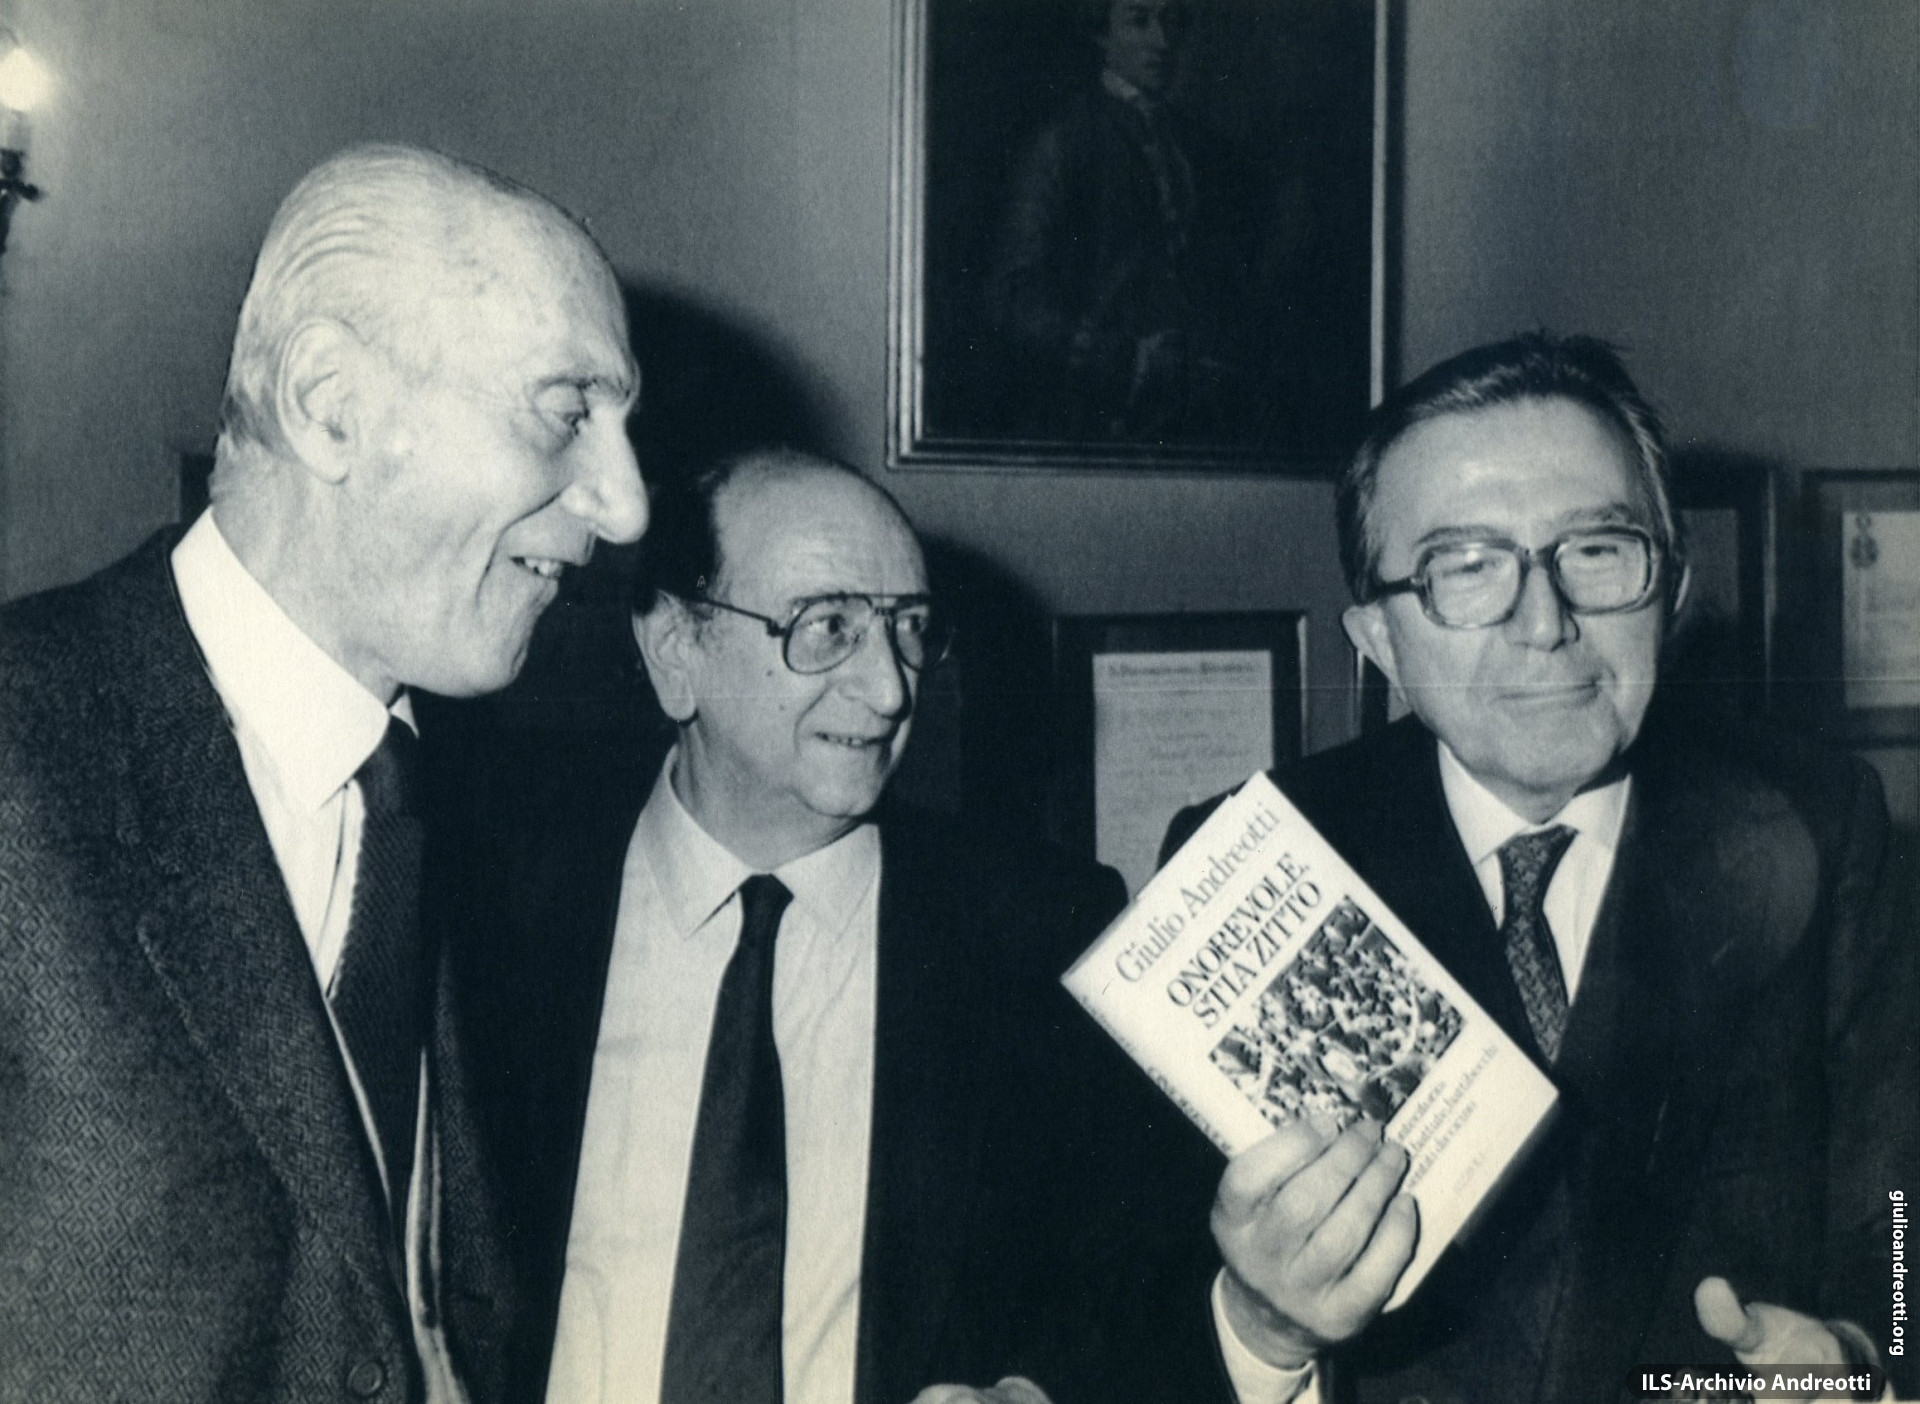 Milano, 2 dicembre 1987. Giulio Andreotti alla presentazione del libro “Onorevole stia zitto”, con i giornalisti Indro Montanelli e Guglielmo Zucconi.